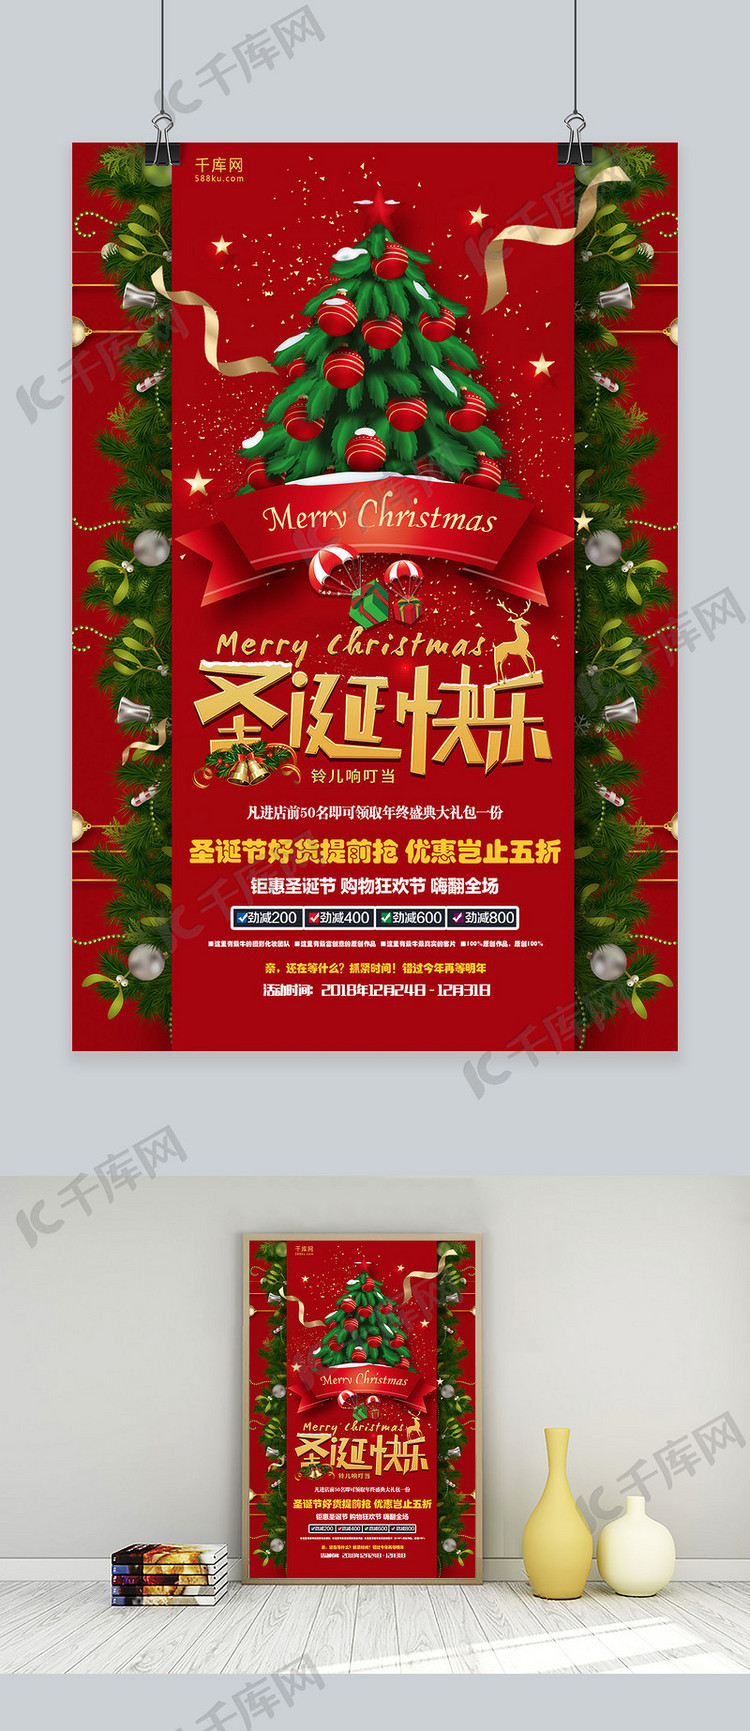 红色大气圣诞节快乐活动促销海报